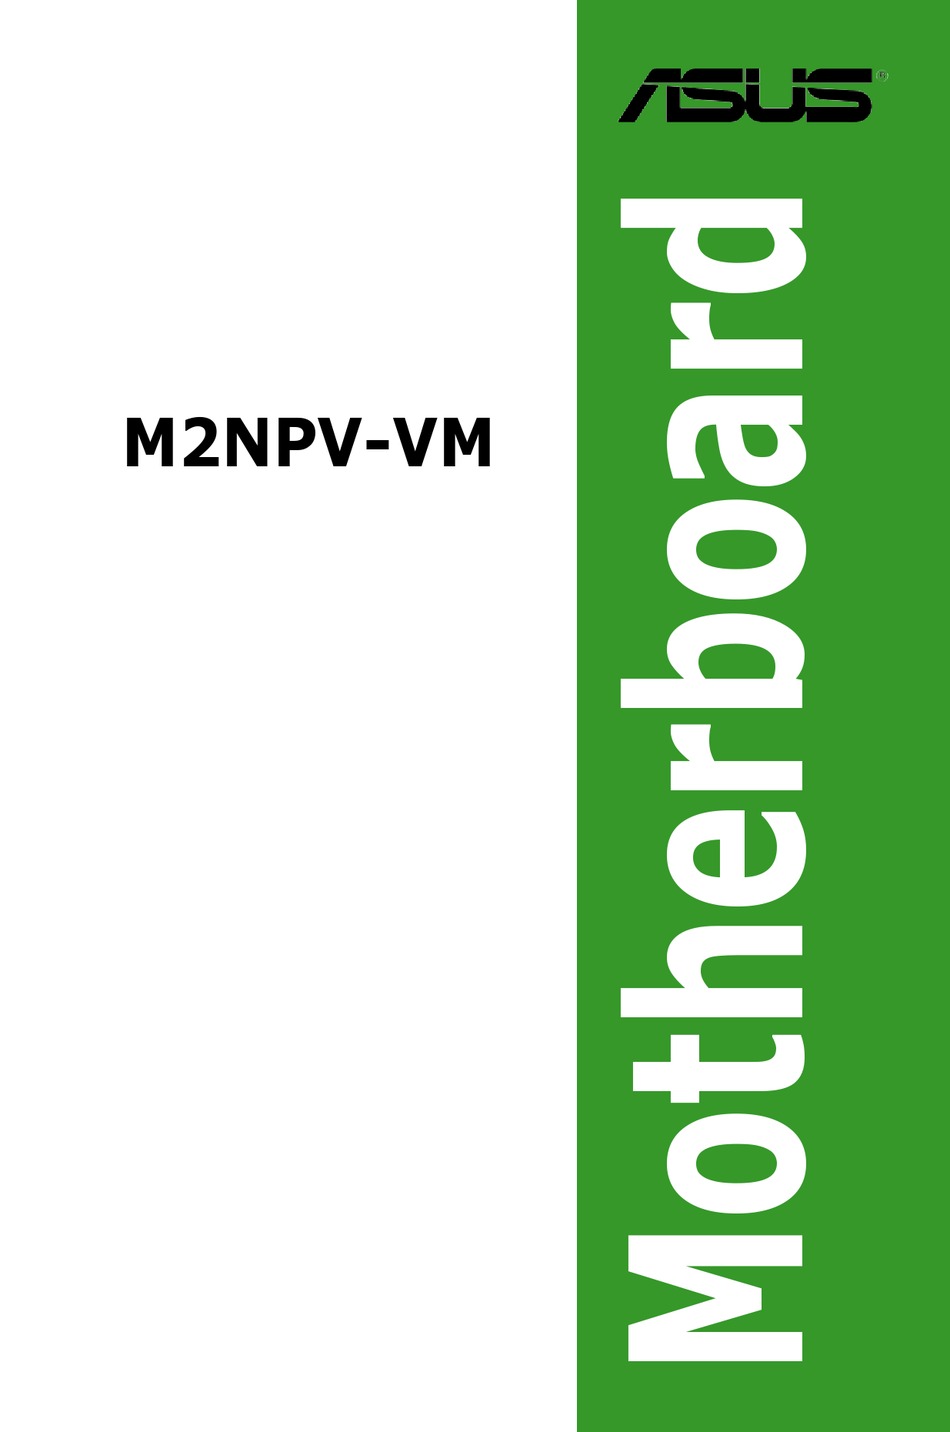 ASUS M2NPV-VM INSTALLATION MANUAL Pdf Download | ManualsLib